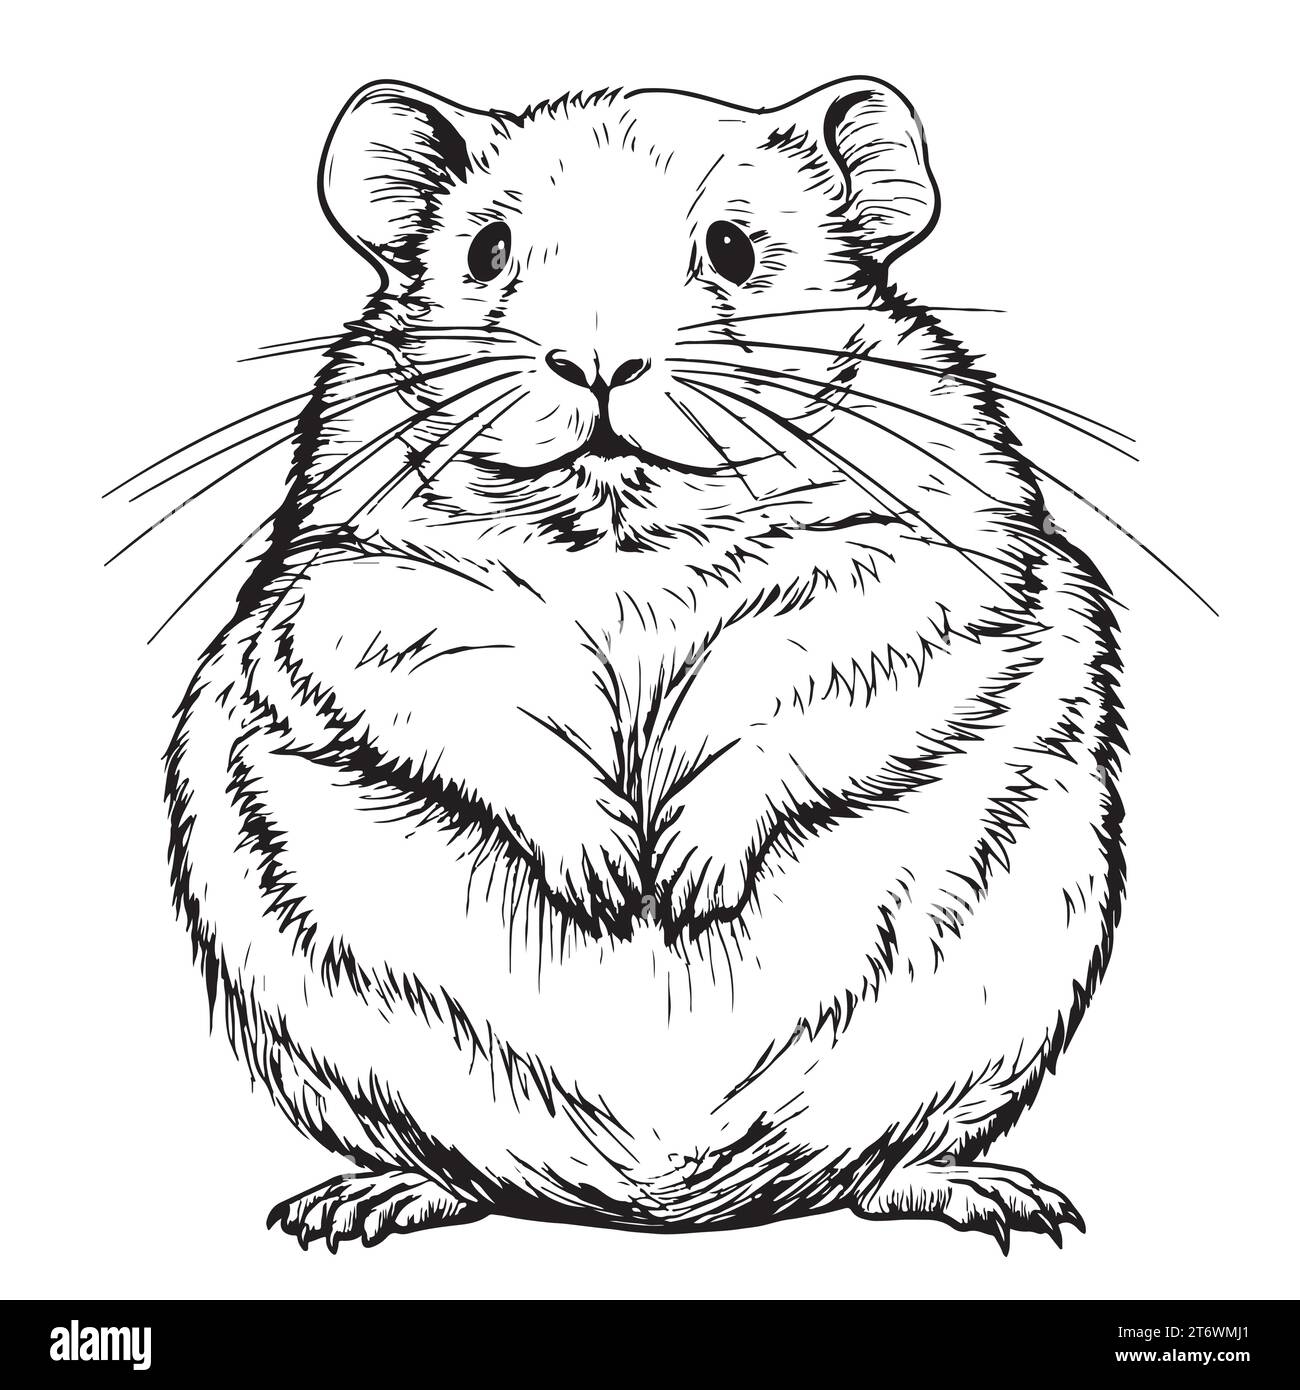 Hamsterskizze, grafisches Porträt eines Hamsters auf weißem Hintergrund, Hamster Vektor-Illustration Stock Vektor